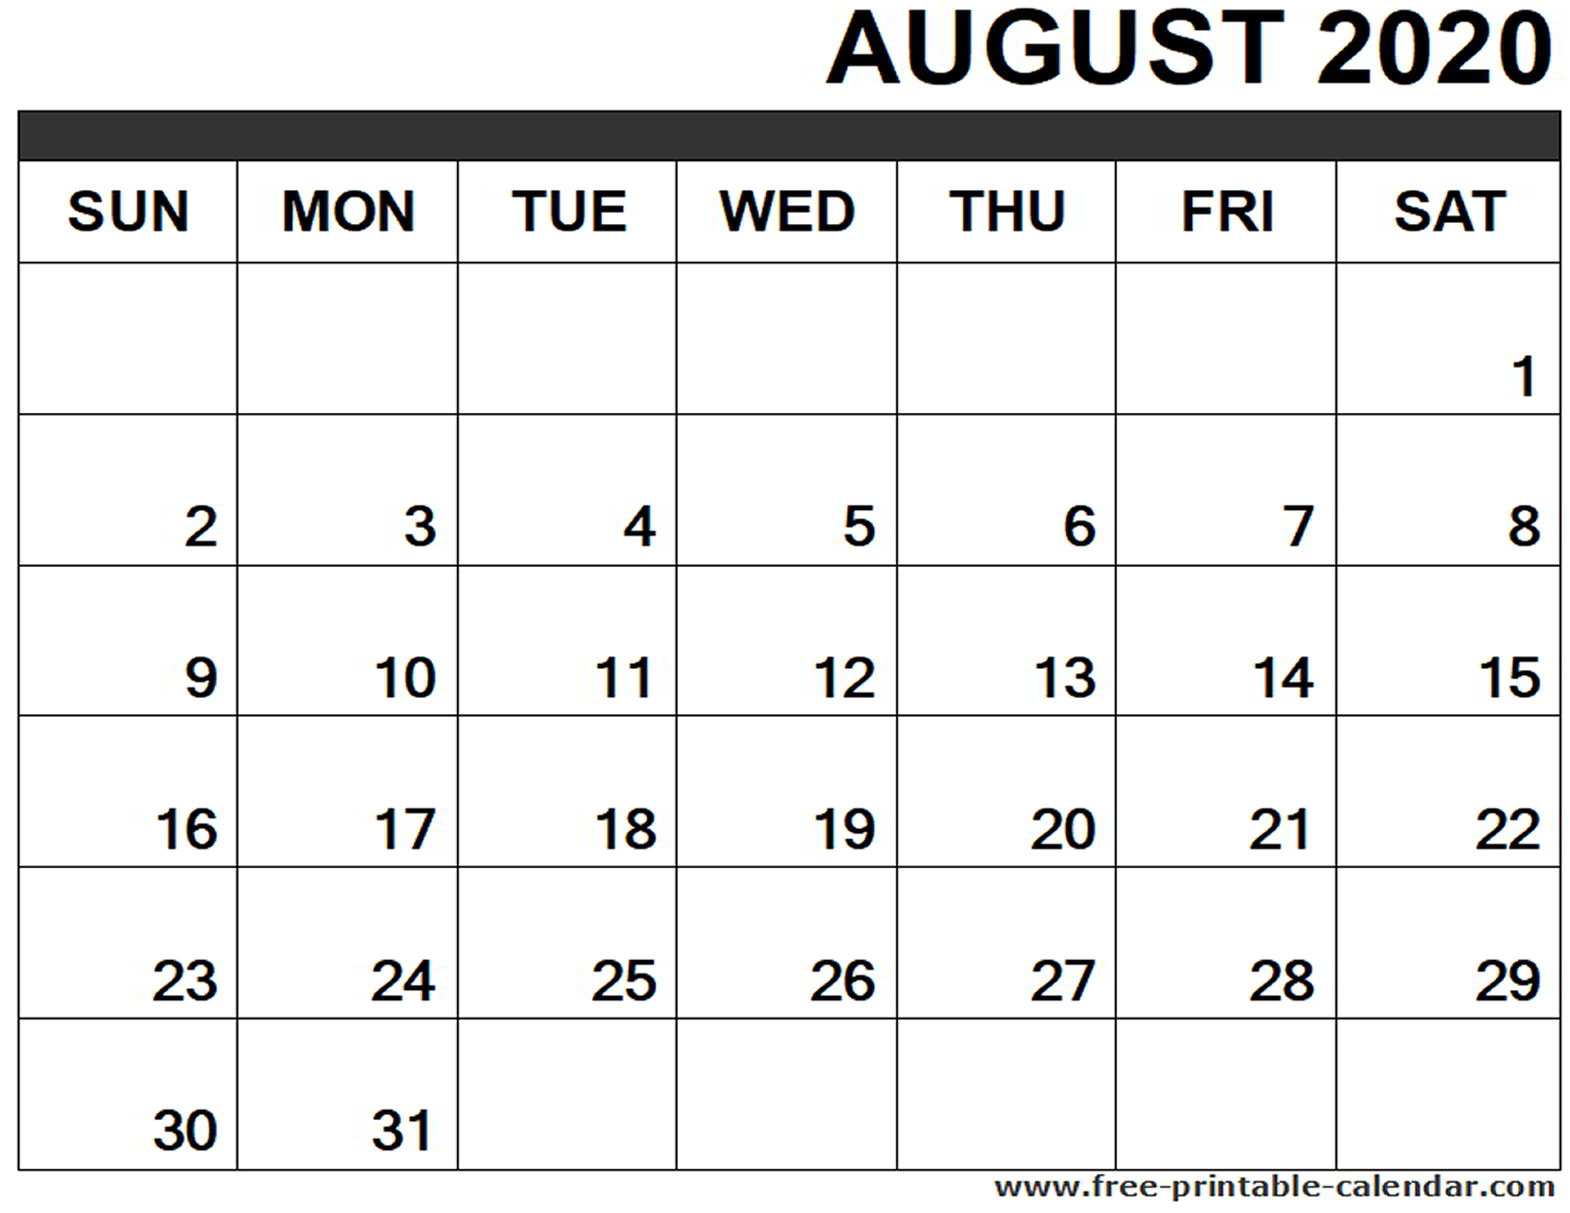 August 2020 Calendar Editable - Wpa.wpart.co